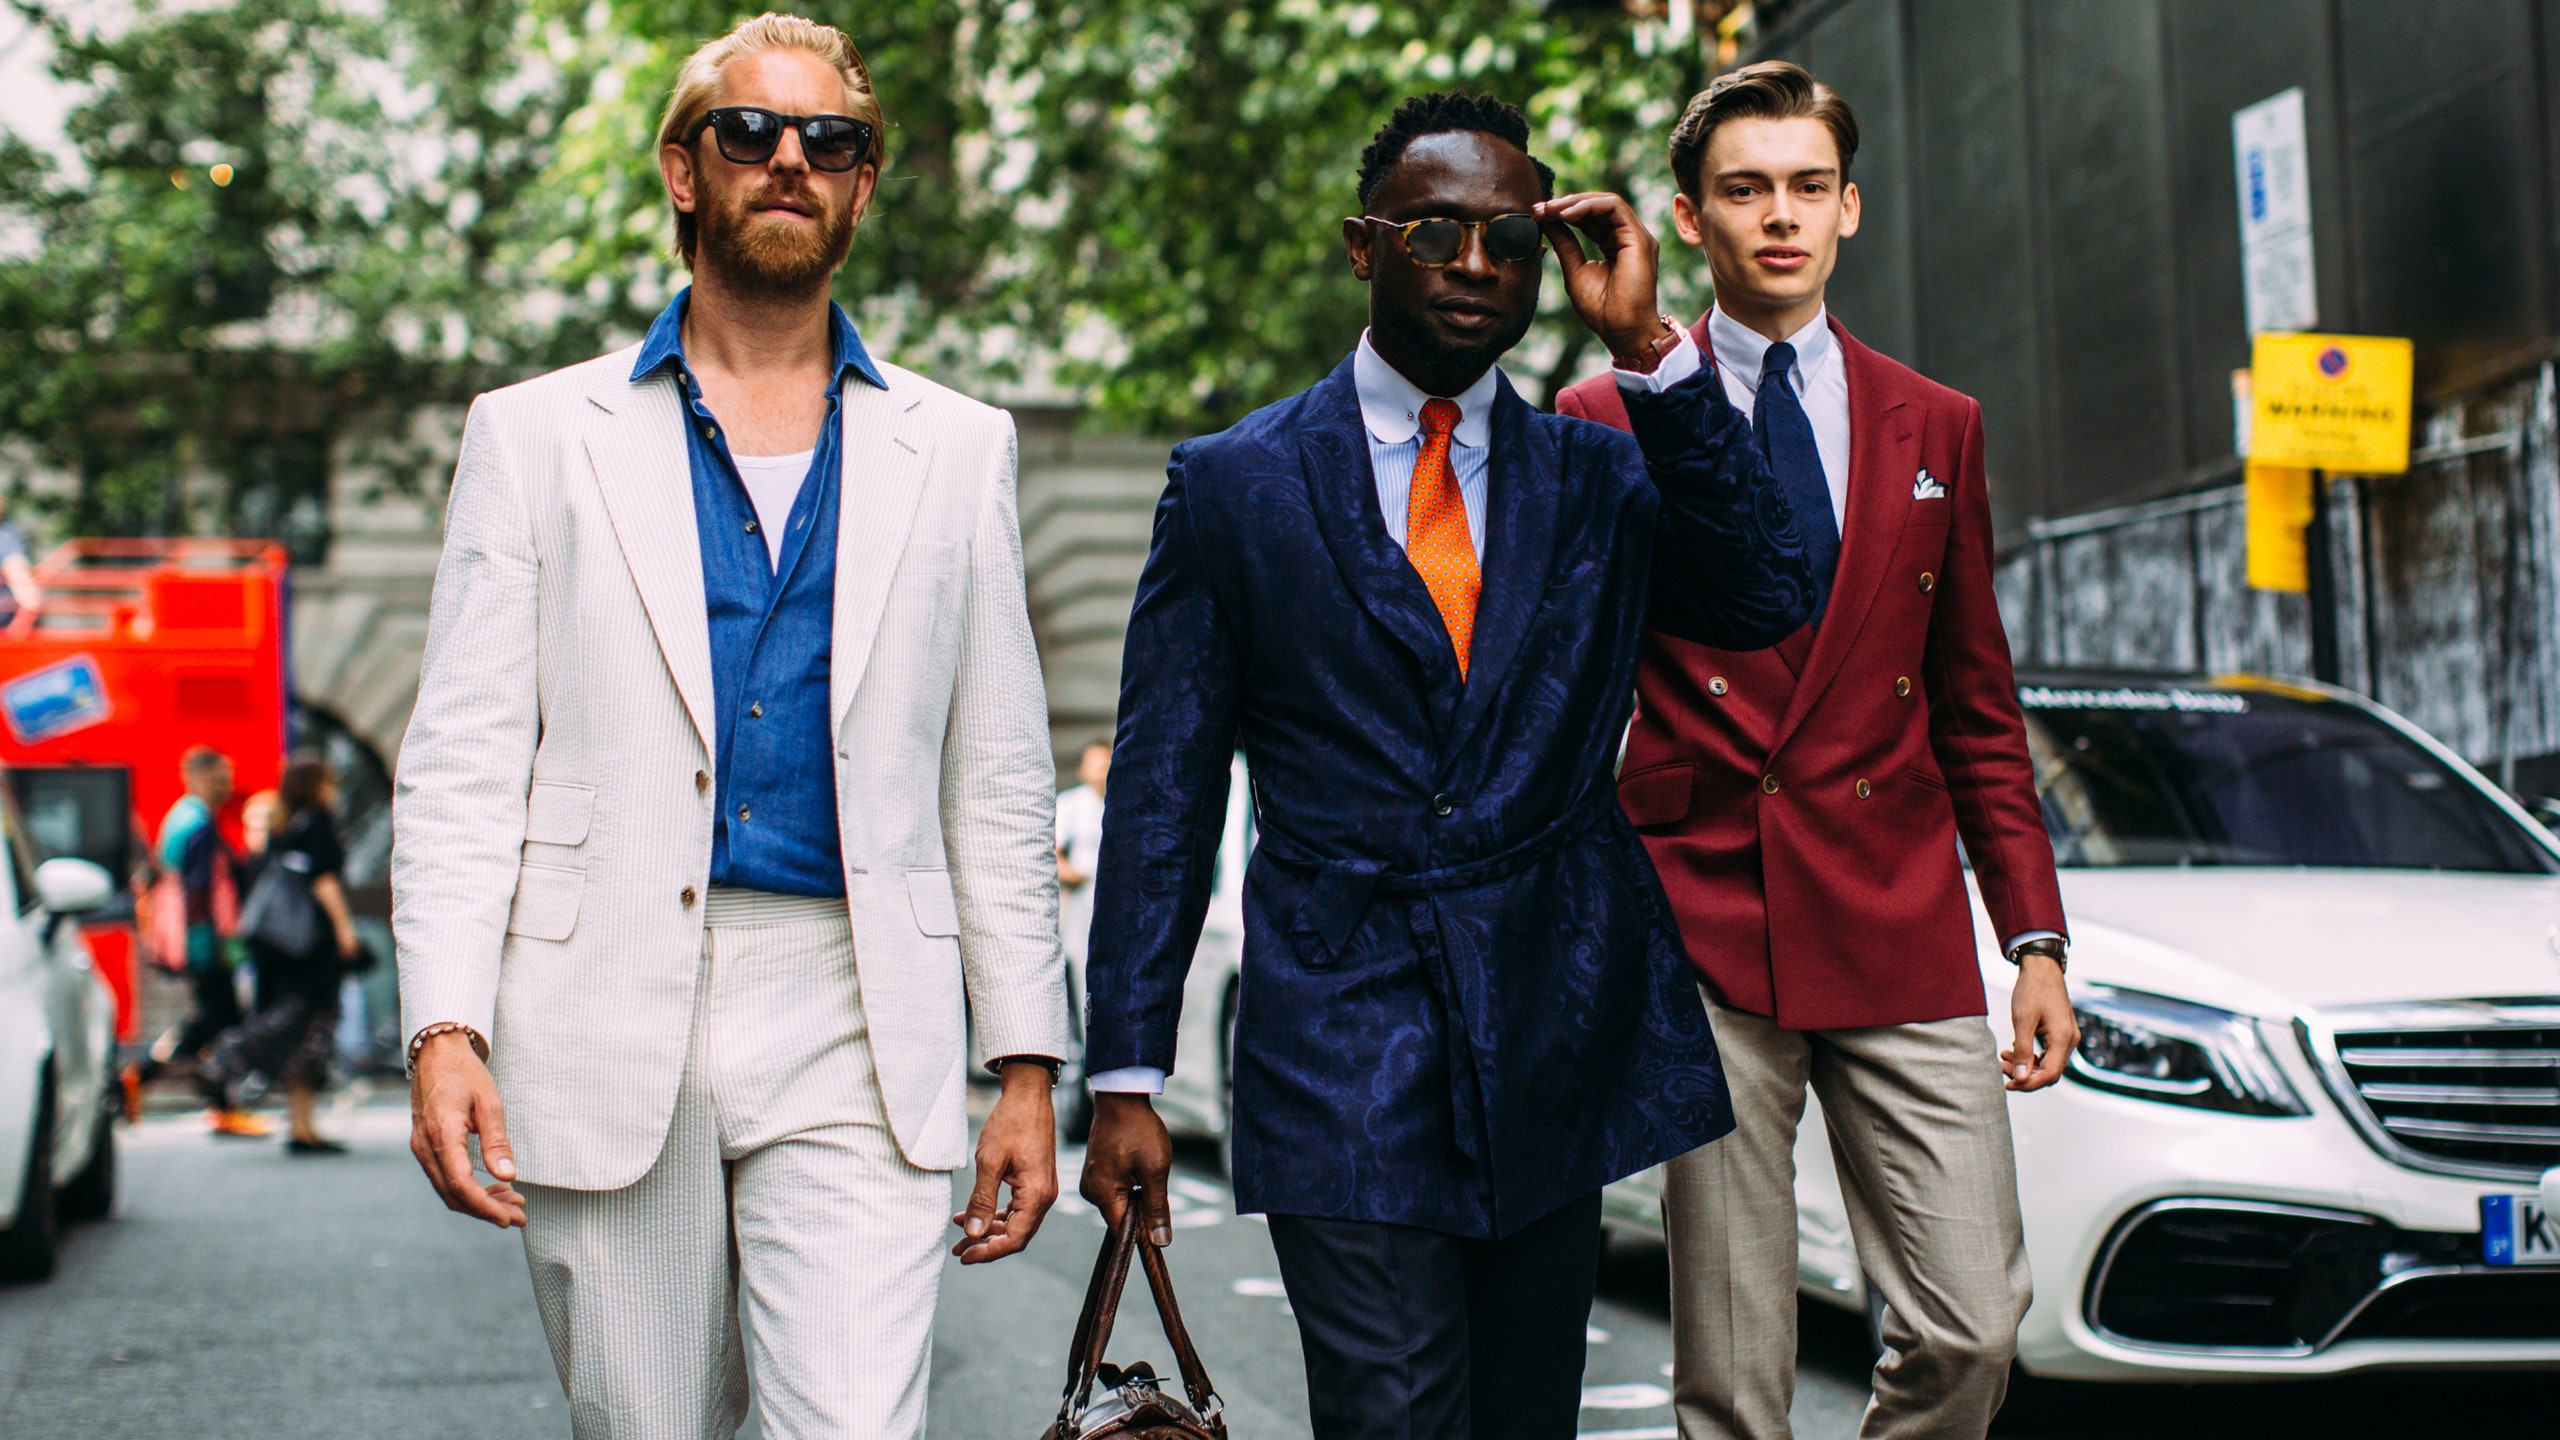 Стильные мужские образы лучшие стритстайл фото с Недель моды